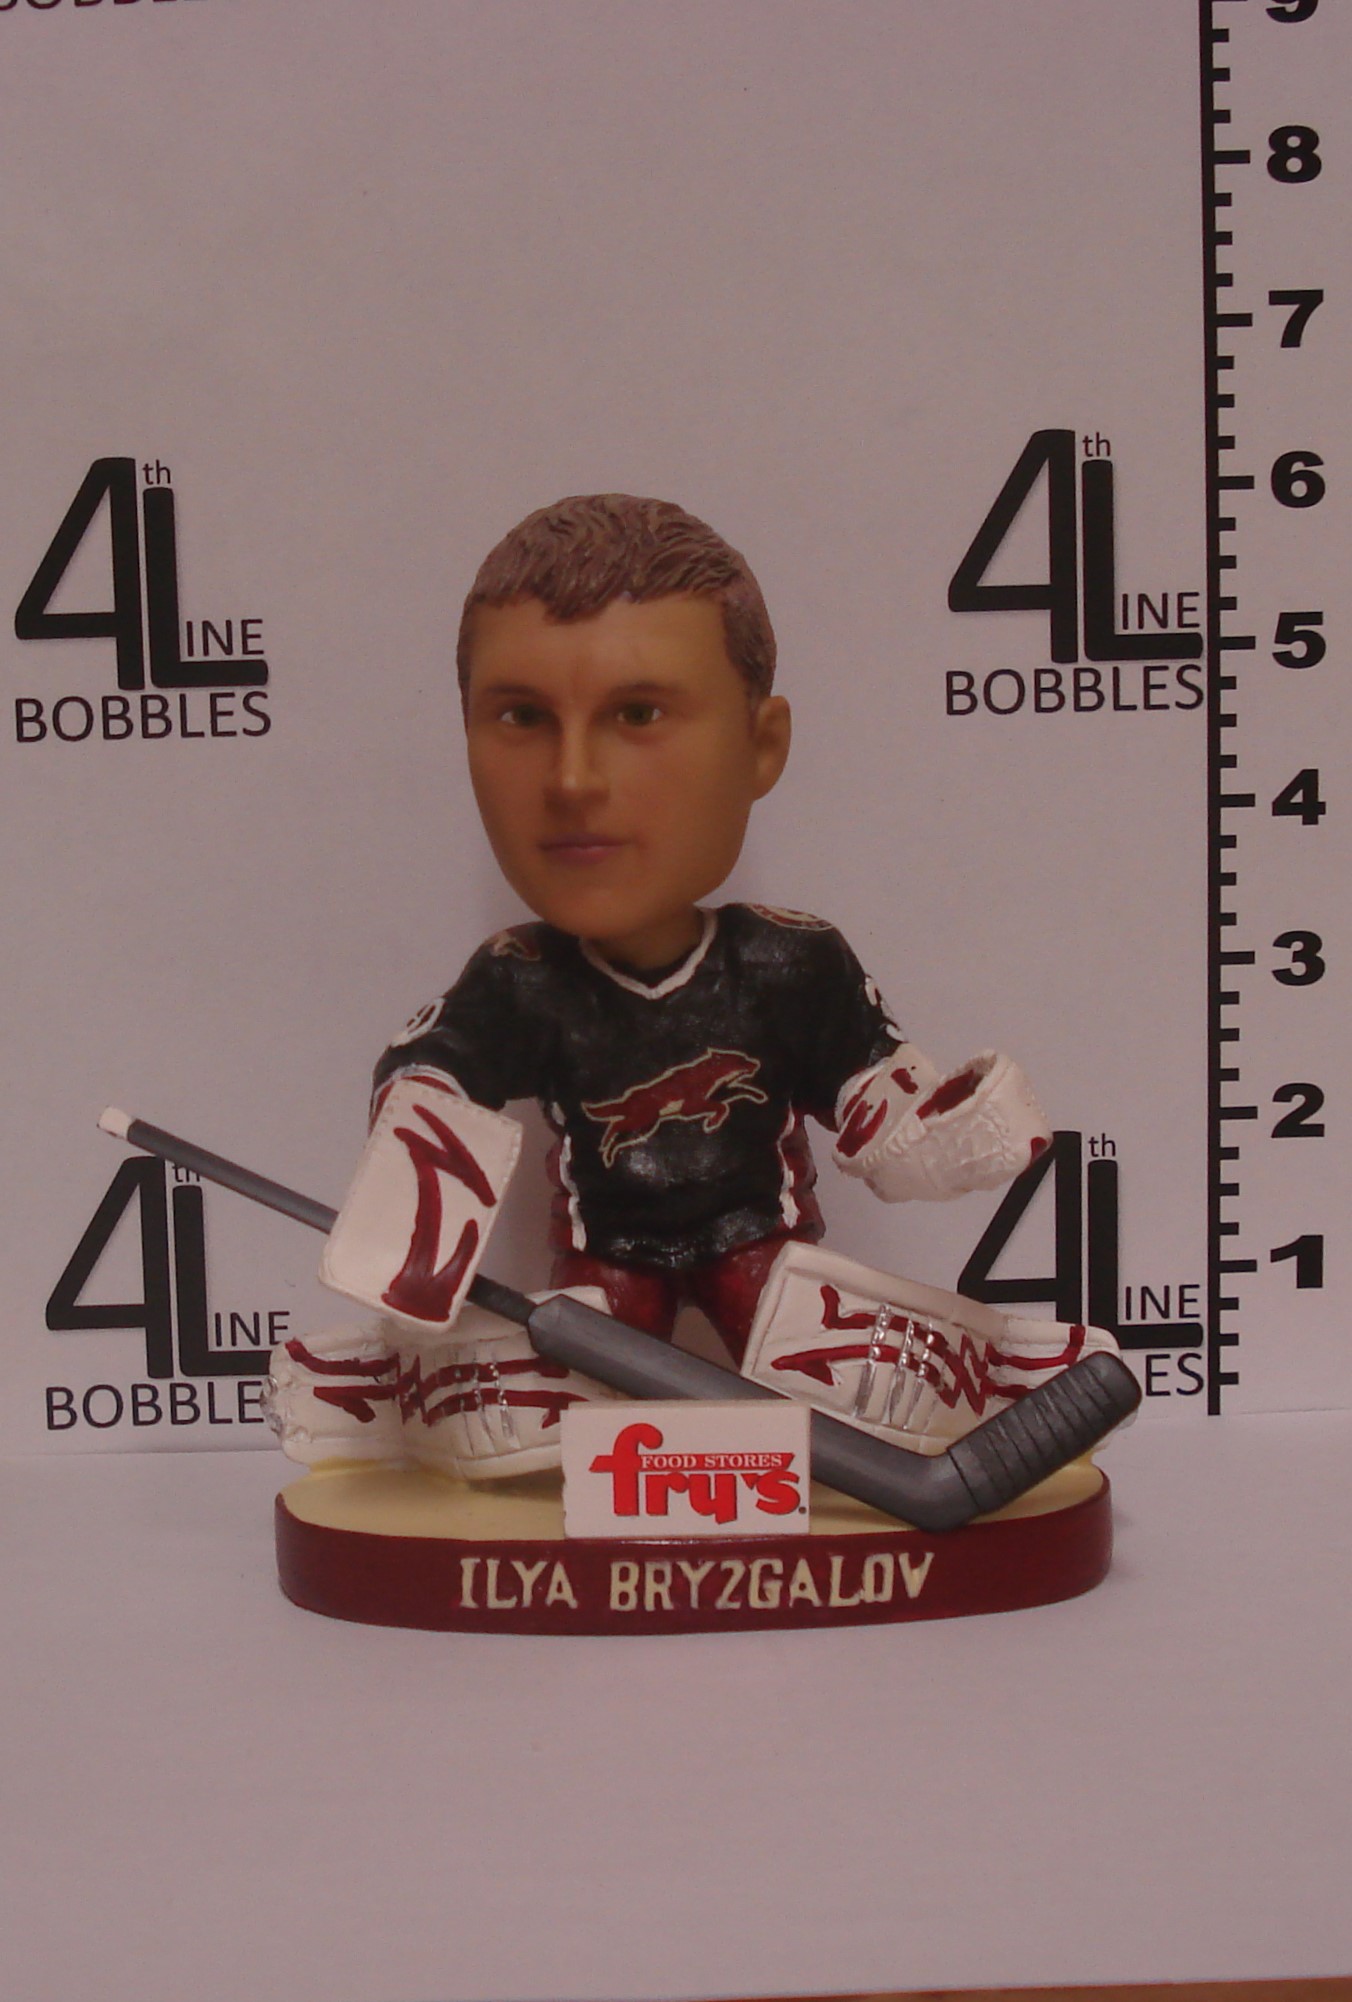 Ilya Bryzgalov bobblehead